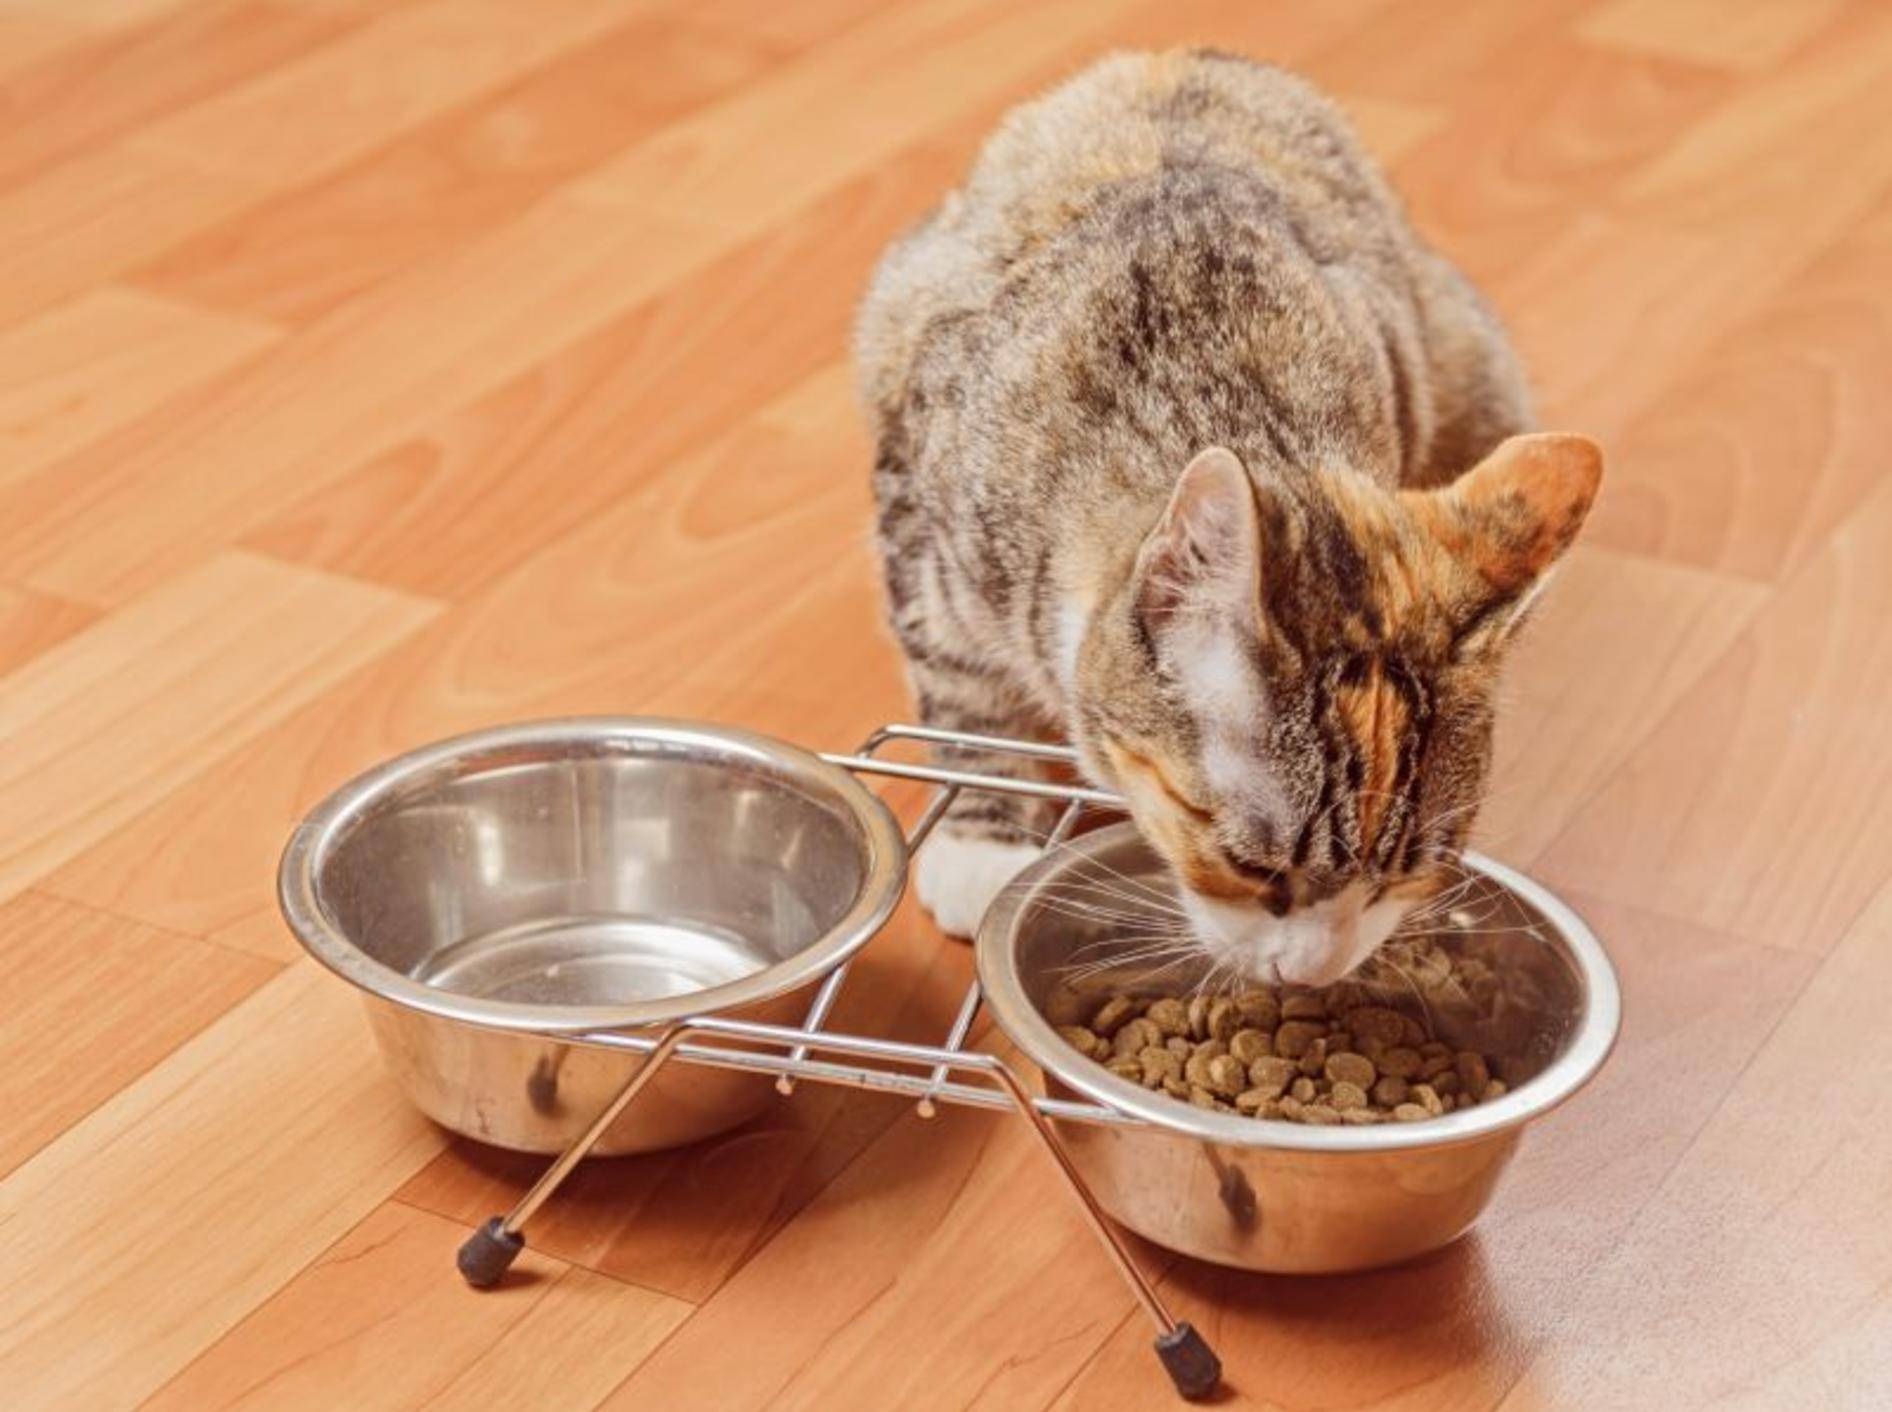 Mit Nahrungsergänzung kann die Katze im Fellwechsel unterstützt werden – Bild: Shutterstock / Poprotskiy Alexey